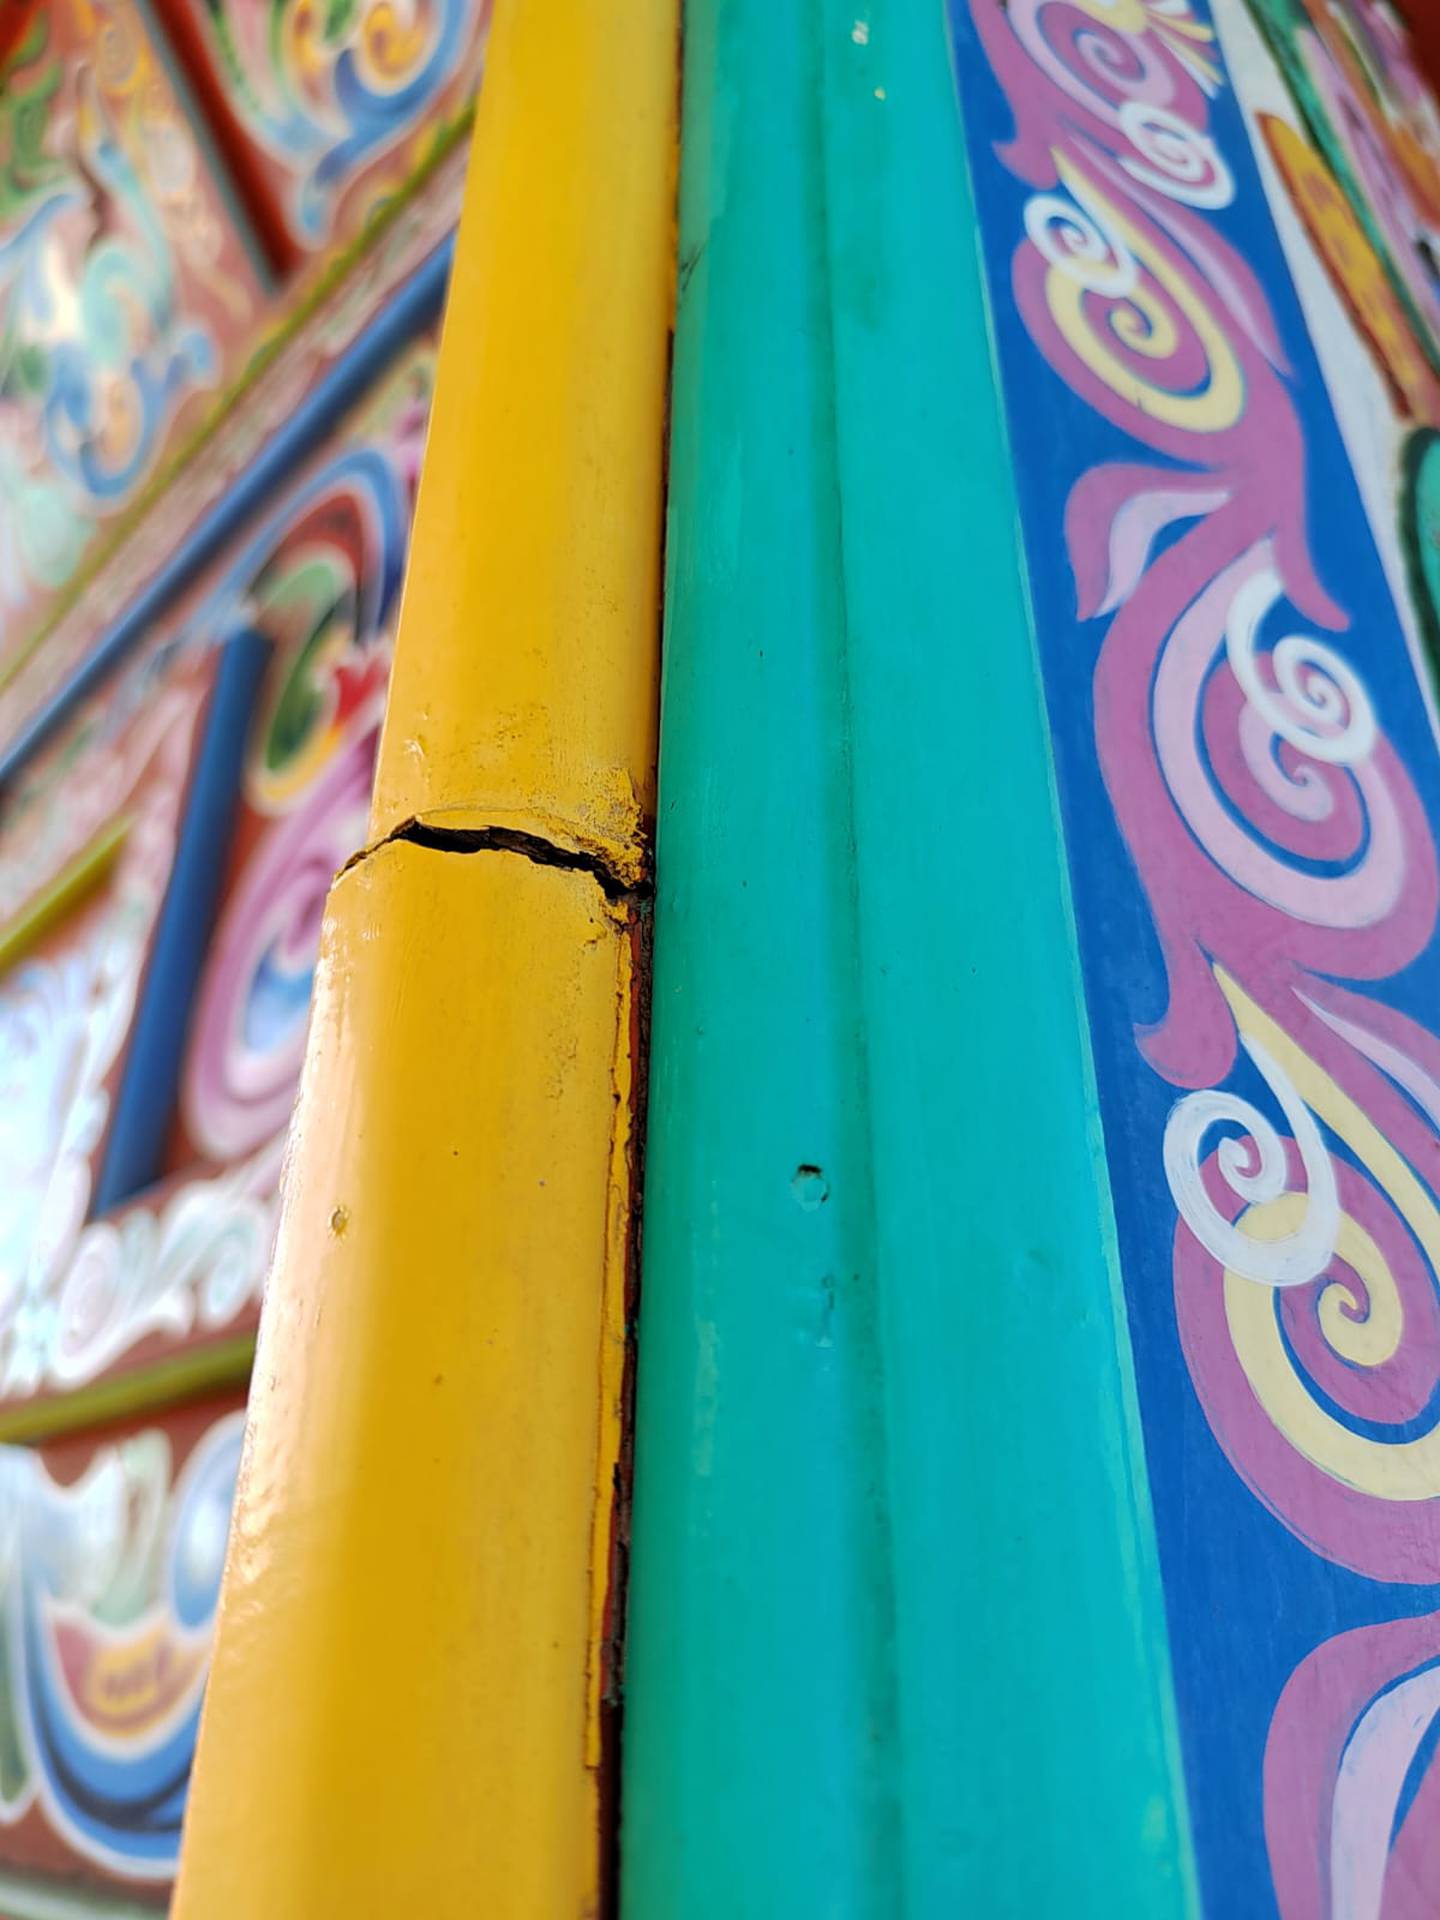 La tradicional carreta típica gigante ubicada en el Parque de Sarchí será restaurada a partir de este próximo jueves 2 de marzo, según confirma la Cámara de Comercio Industria y Turismo de Sarchí (CACITUS) y la Municipalidad de Sarchí